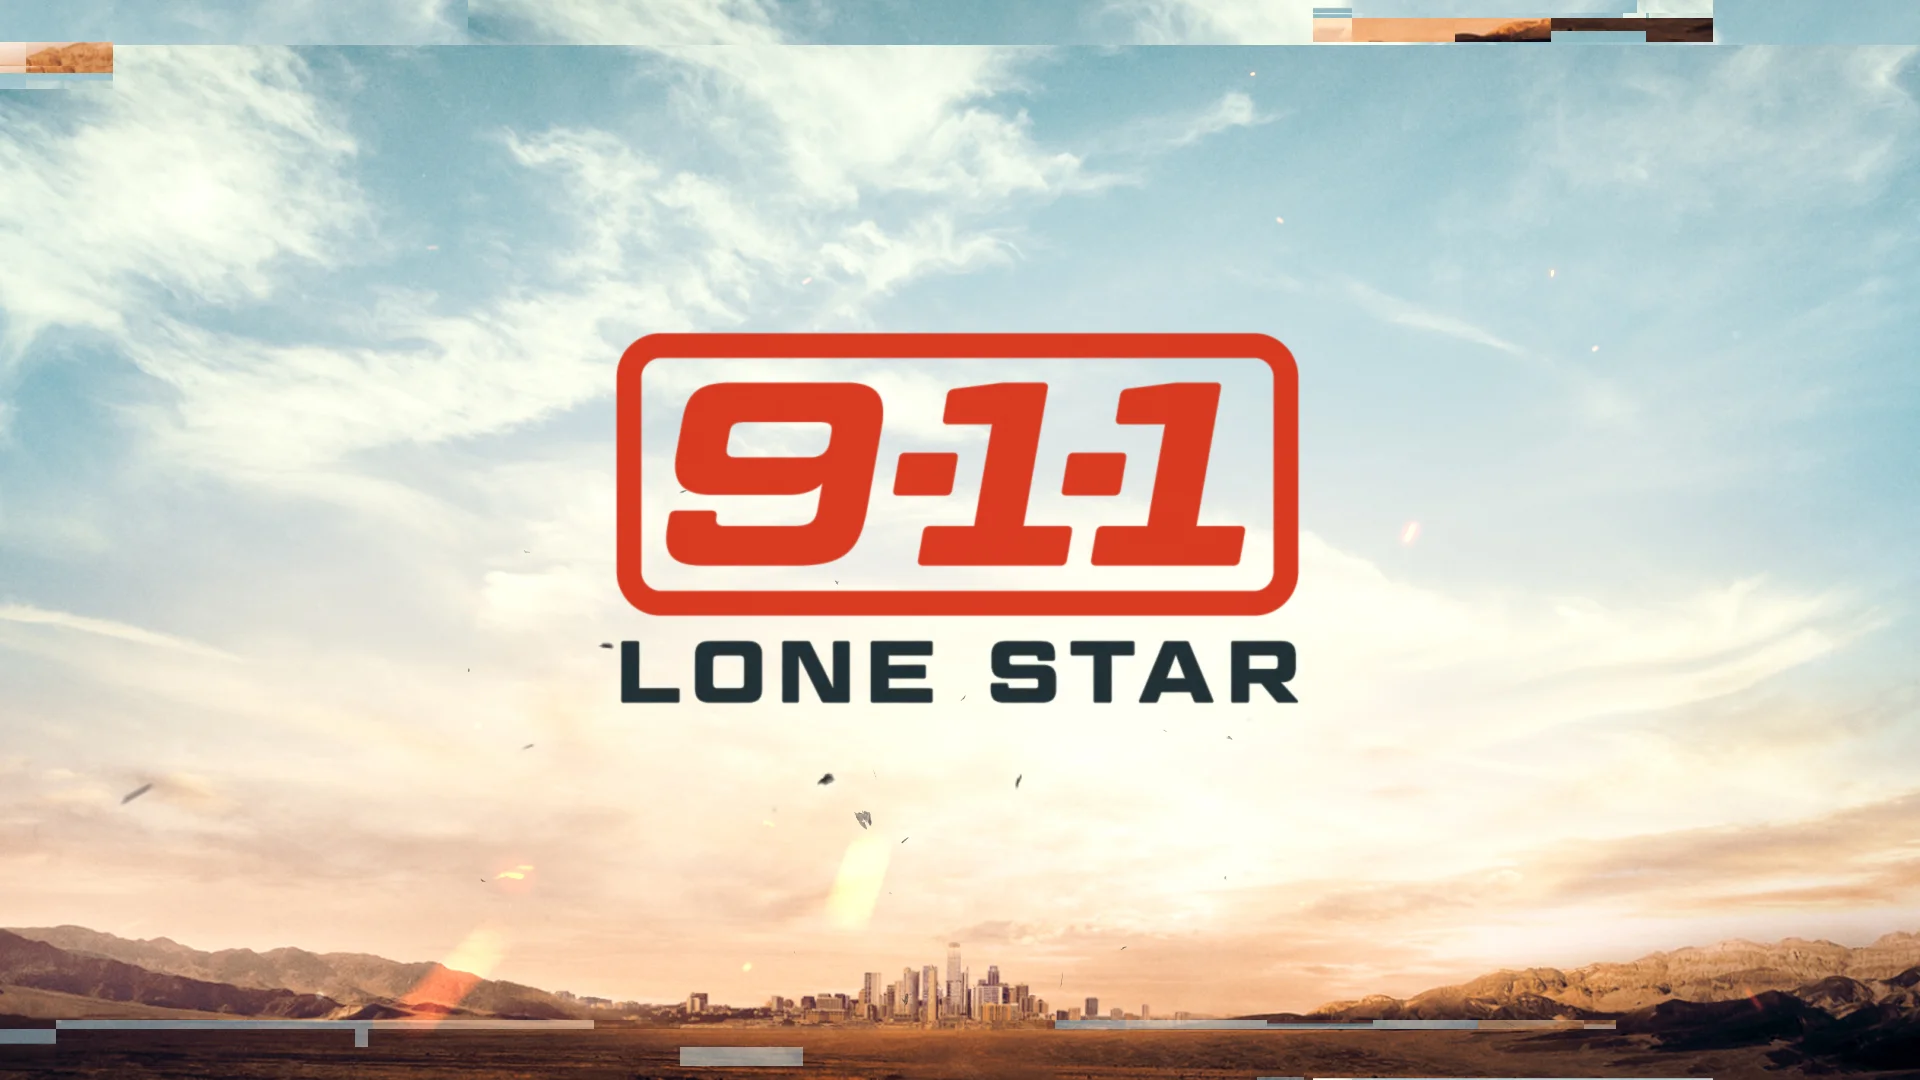 9-1-1: Lone Star season 5 premiere date window revealed (finally)